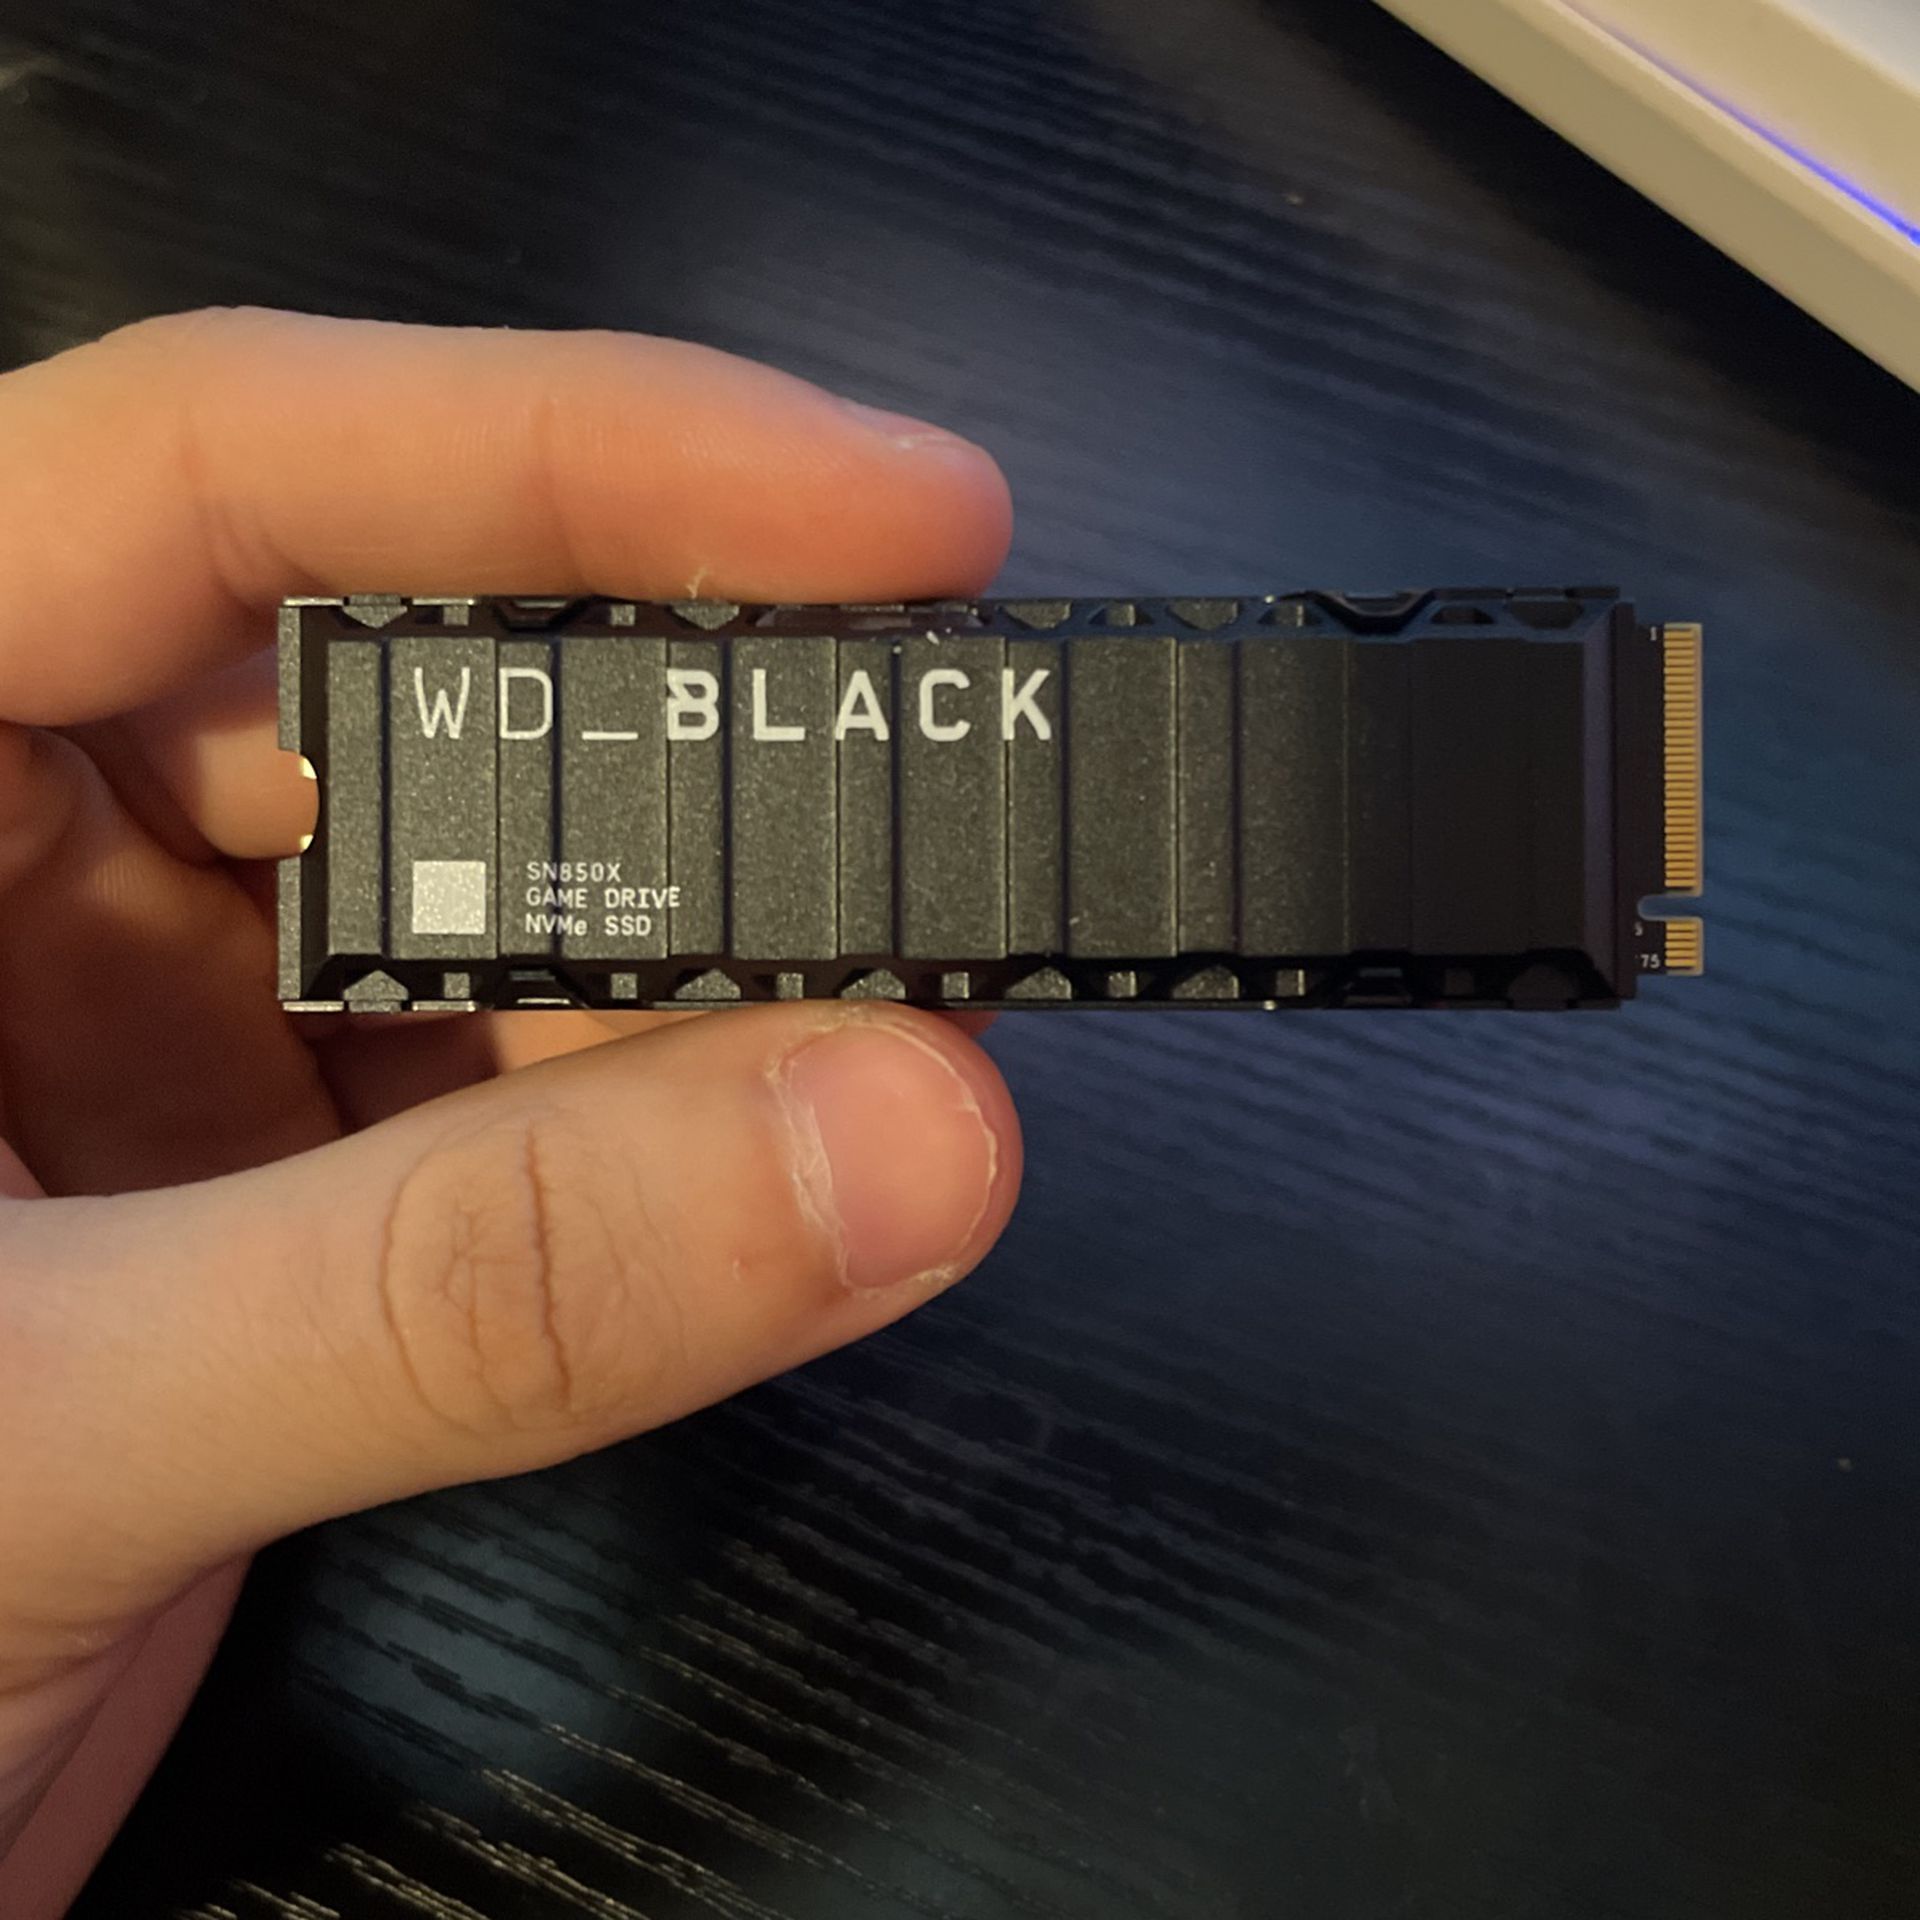 WD_black 1tb Of SSD